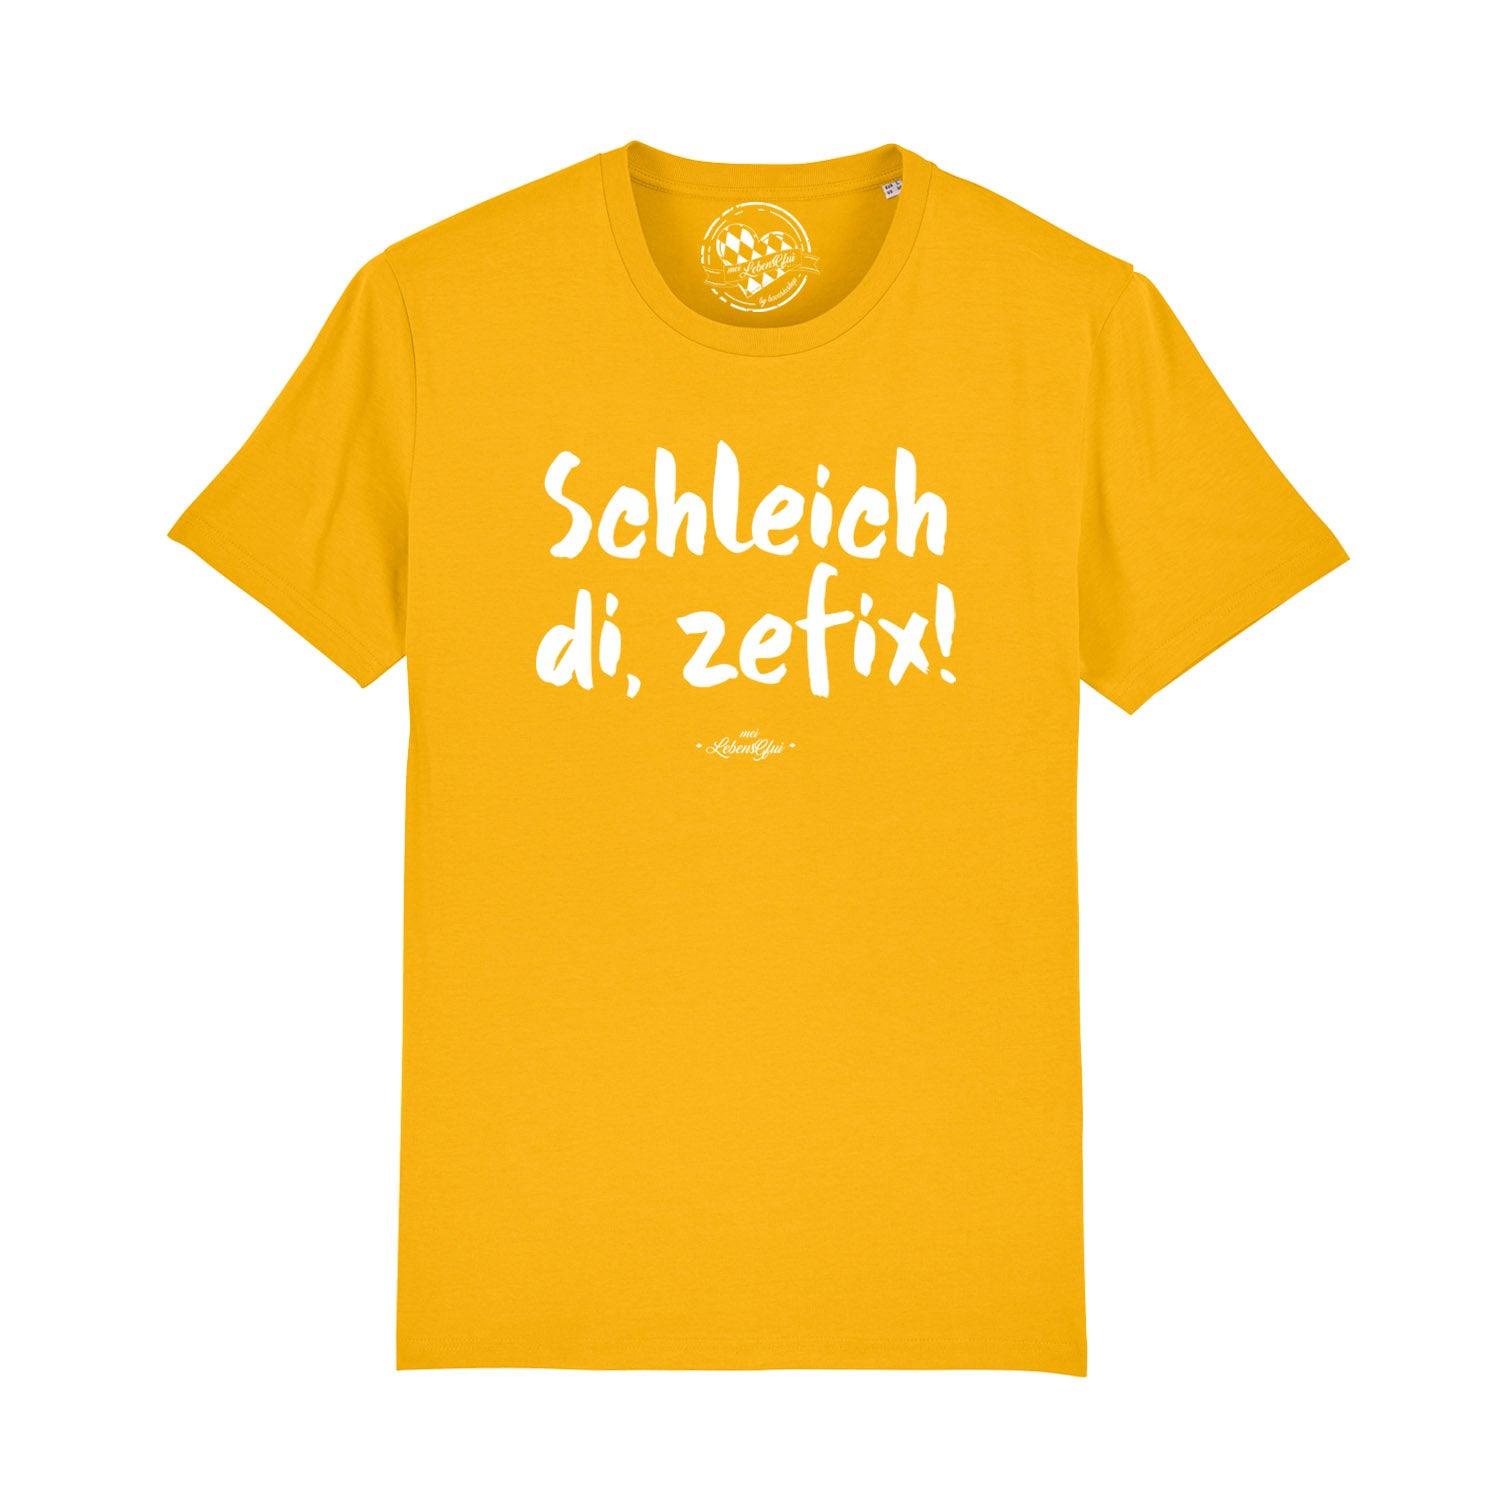 Herren T-Shirt "Schleich di, zefix!" - bavariashop - mei LebensGfui